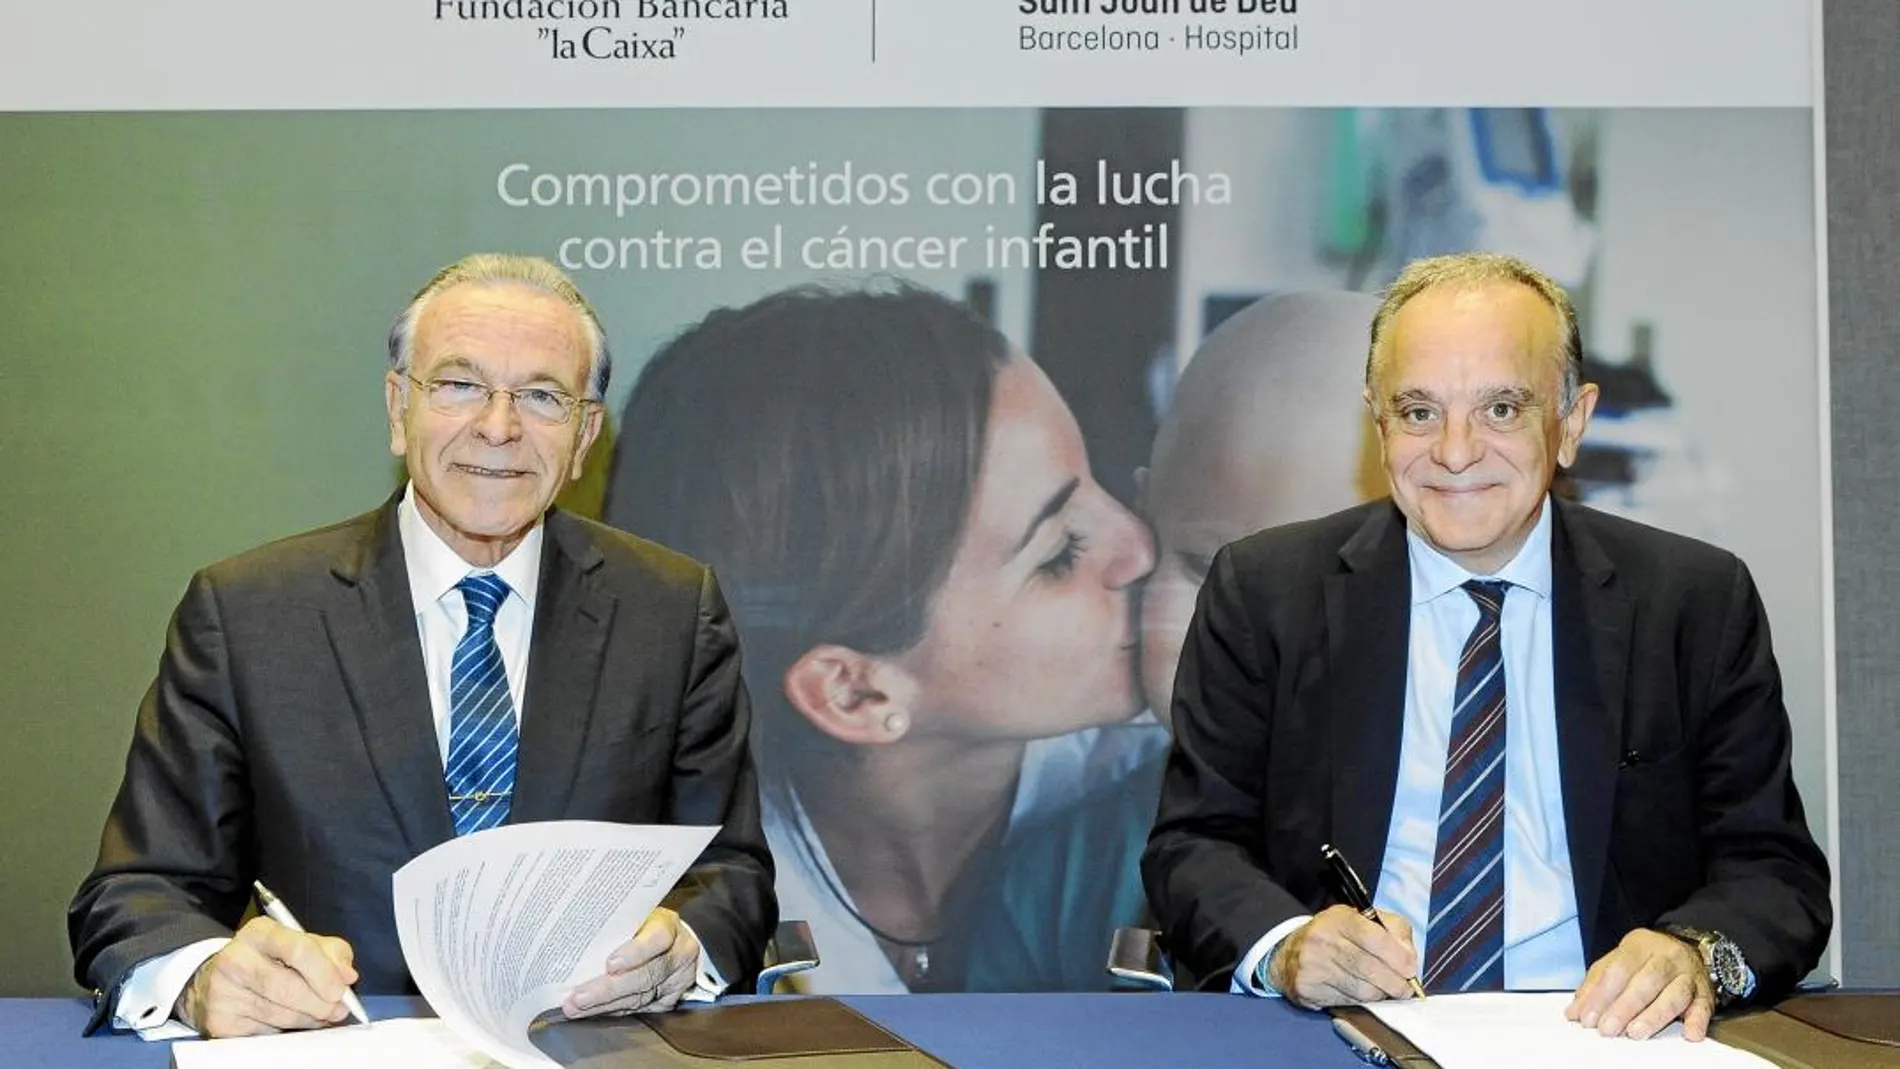 Isidro Fainé y Manuel del Castillo firman la alianza entre la Fundación Bancaria La Caixa y el Hospital Sant Joan de Déu